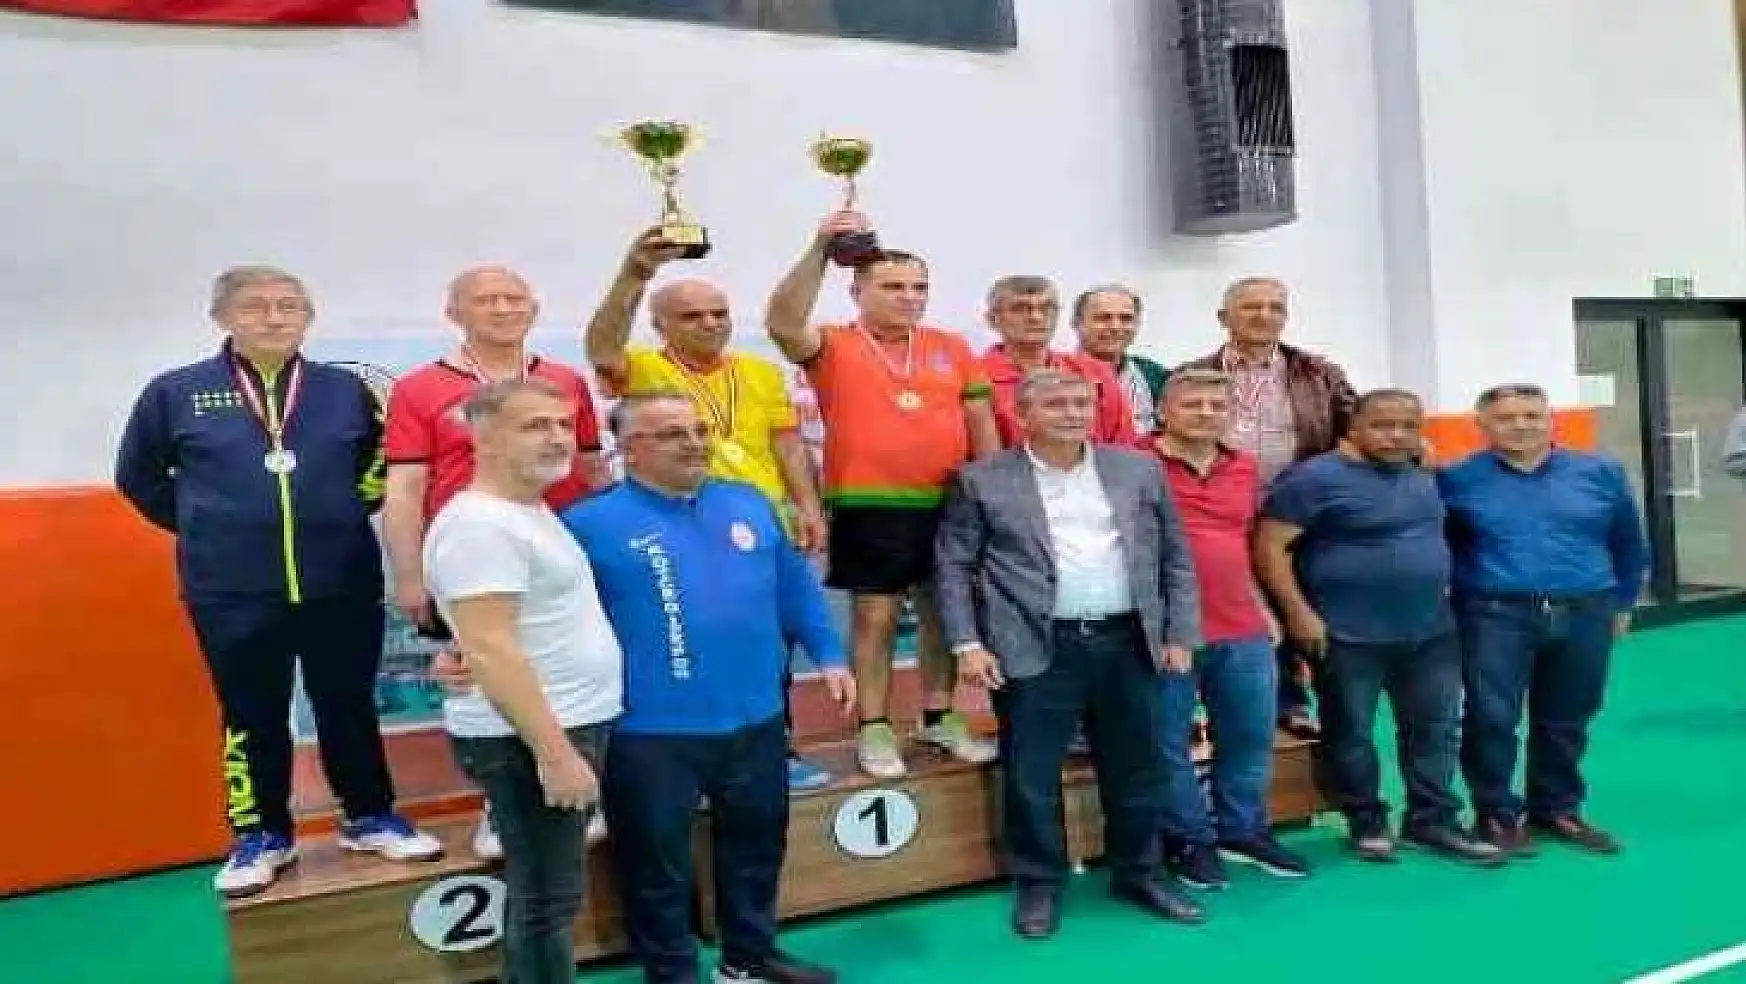 Muğla'nın Köyceğiz ilçesinde gerçekleştirilen Veteranlar Masa Tenisi Turnuvası sona erdi.